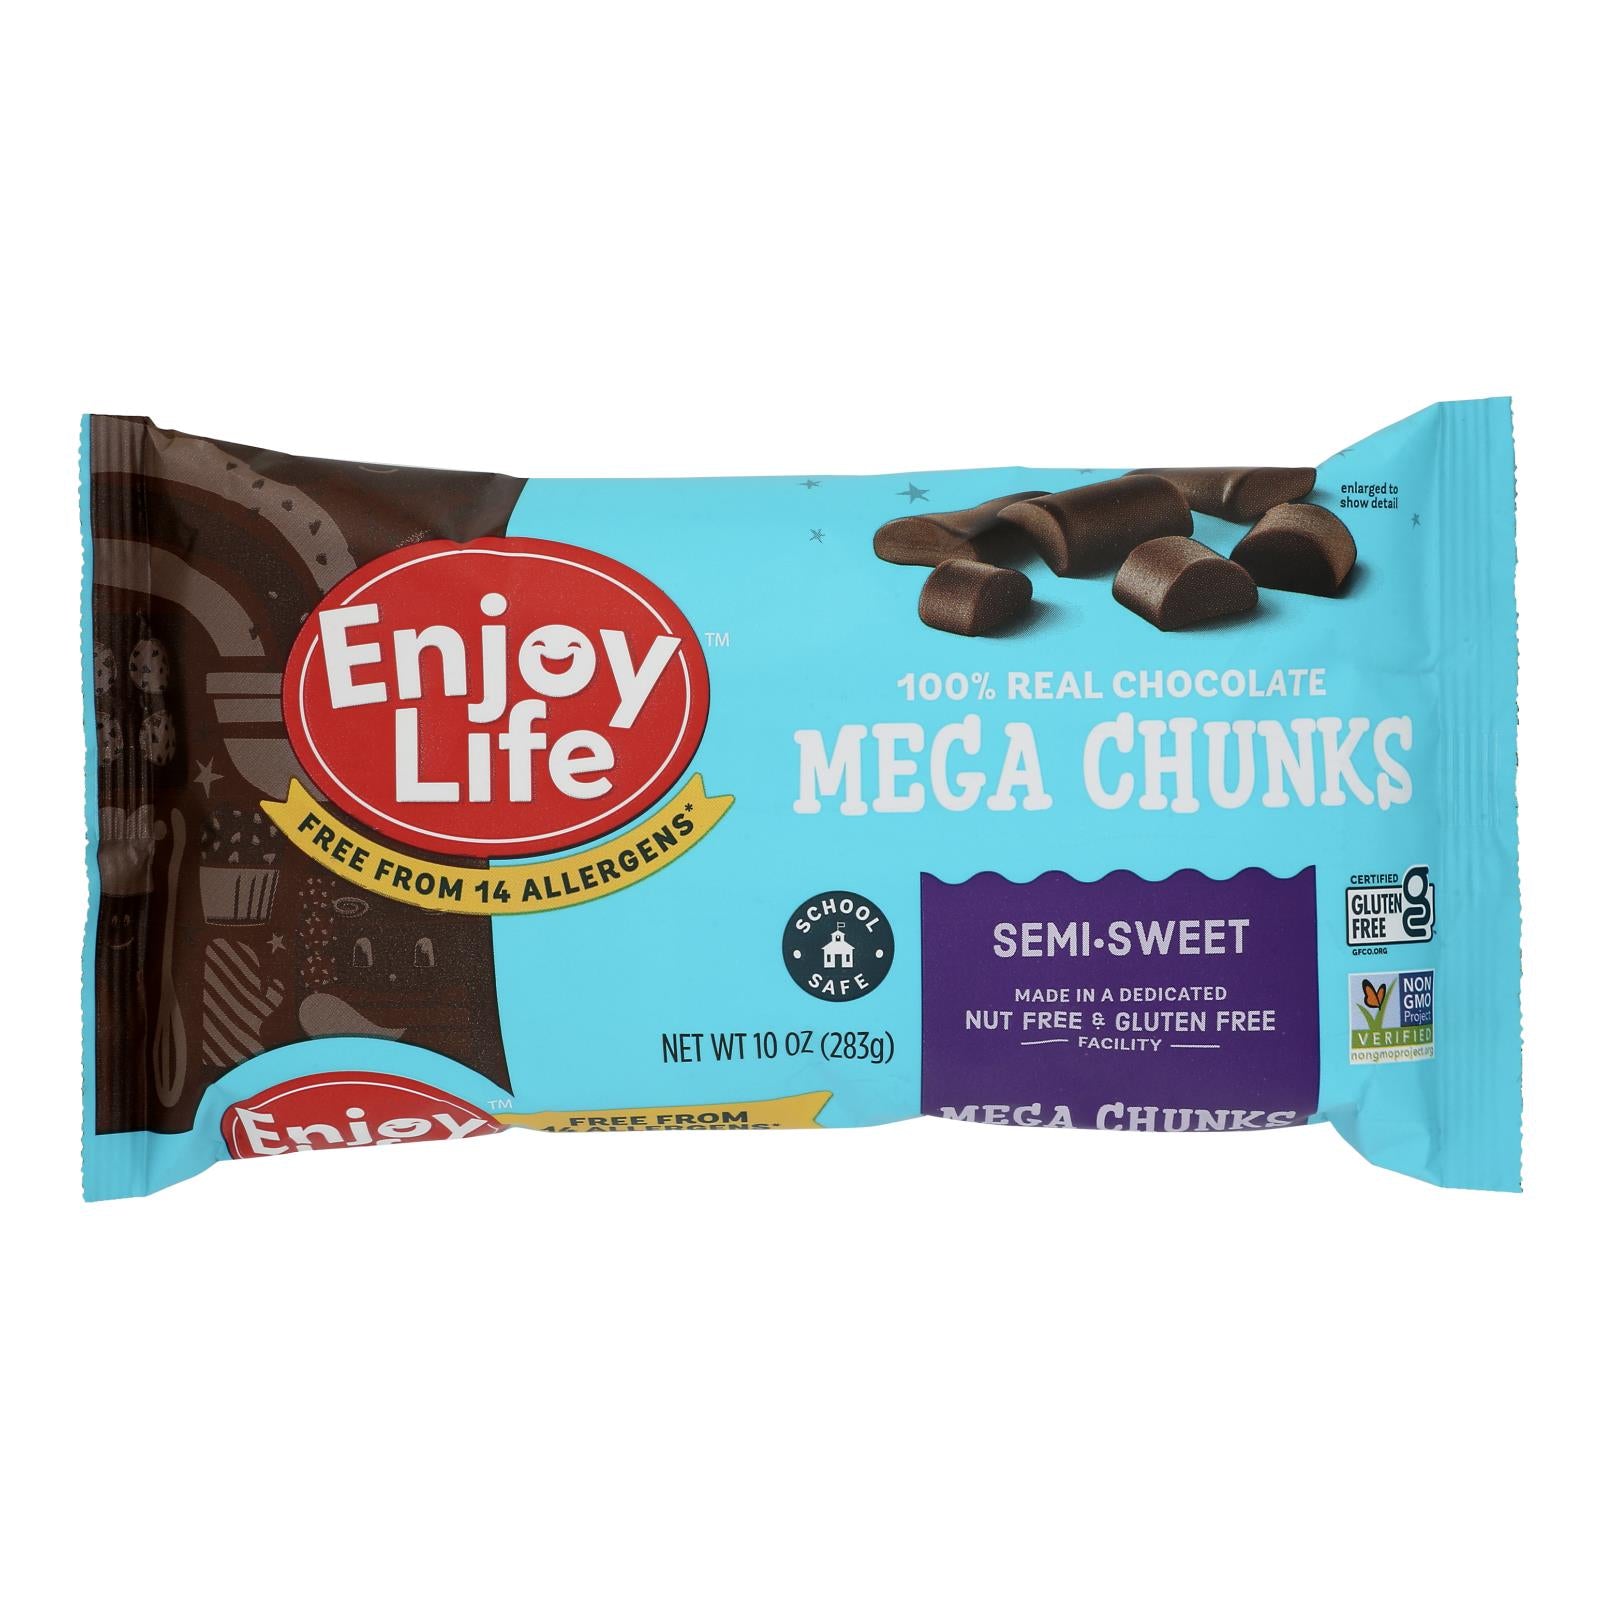 Enjoy Life - Baking Chocolate - Mega Chunks - Semi-sweet - 10 Oz - Case Of 12